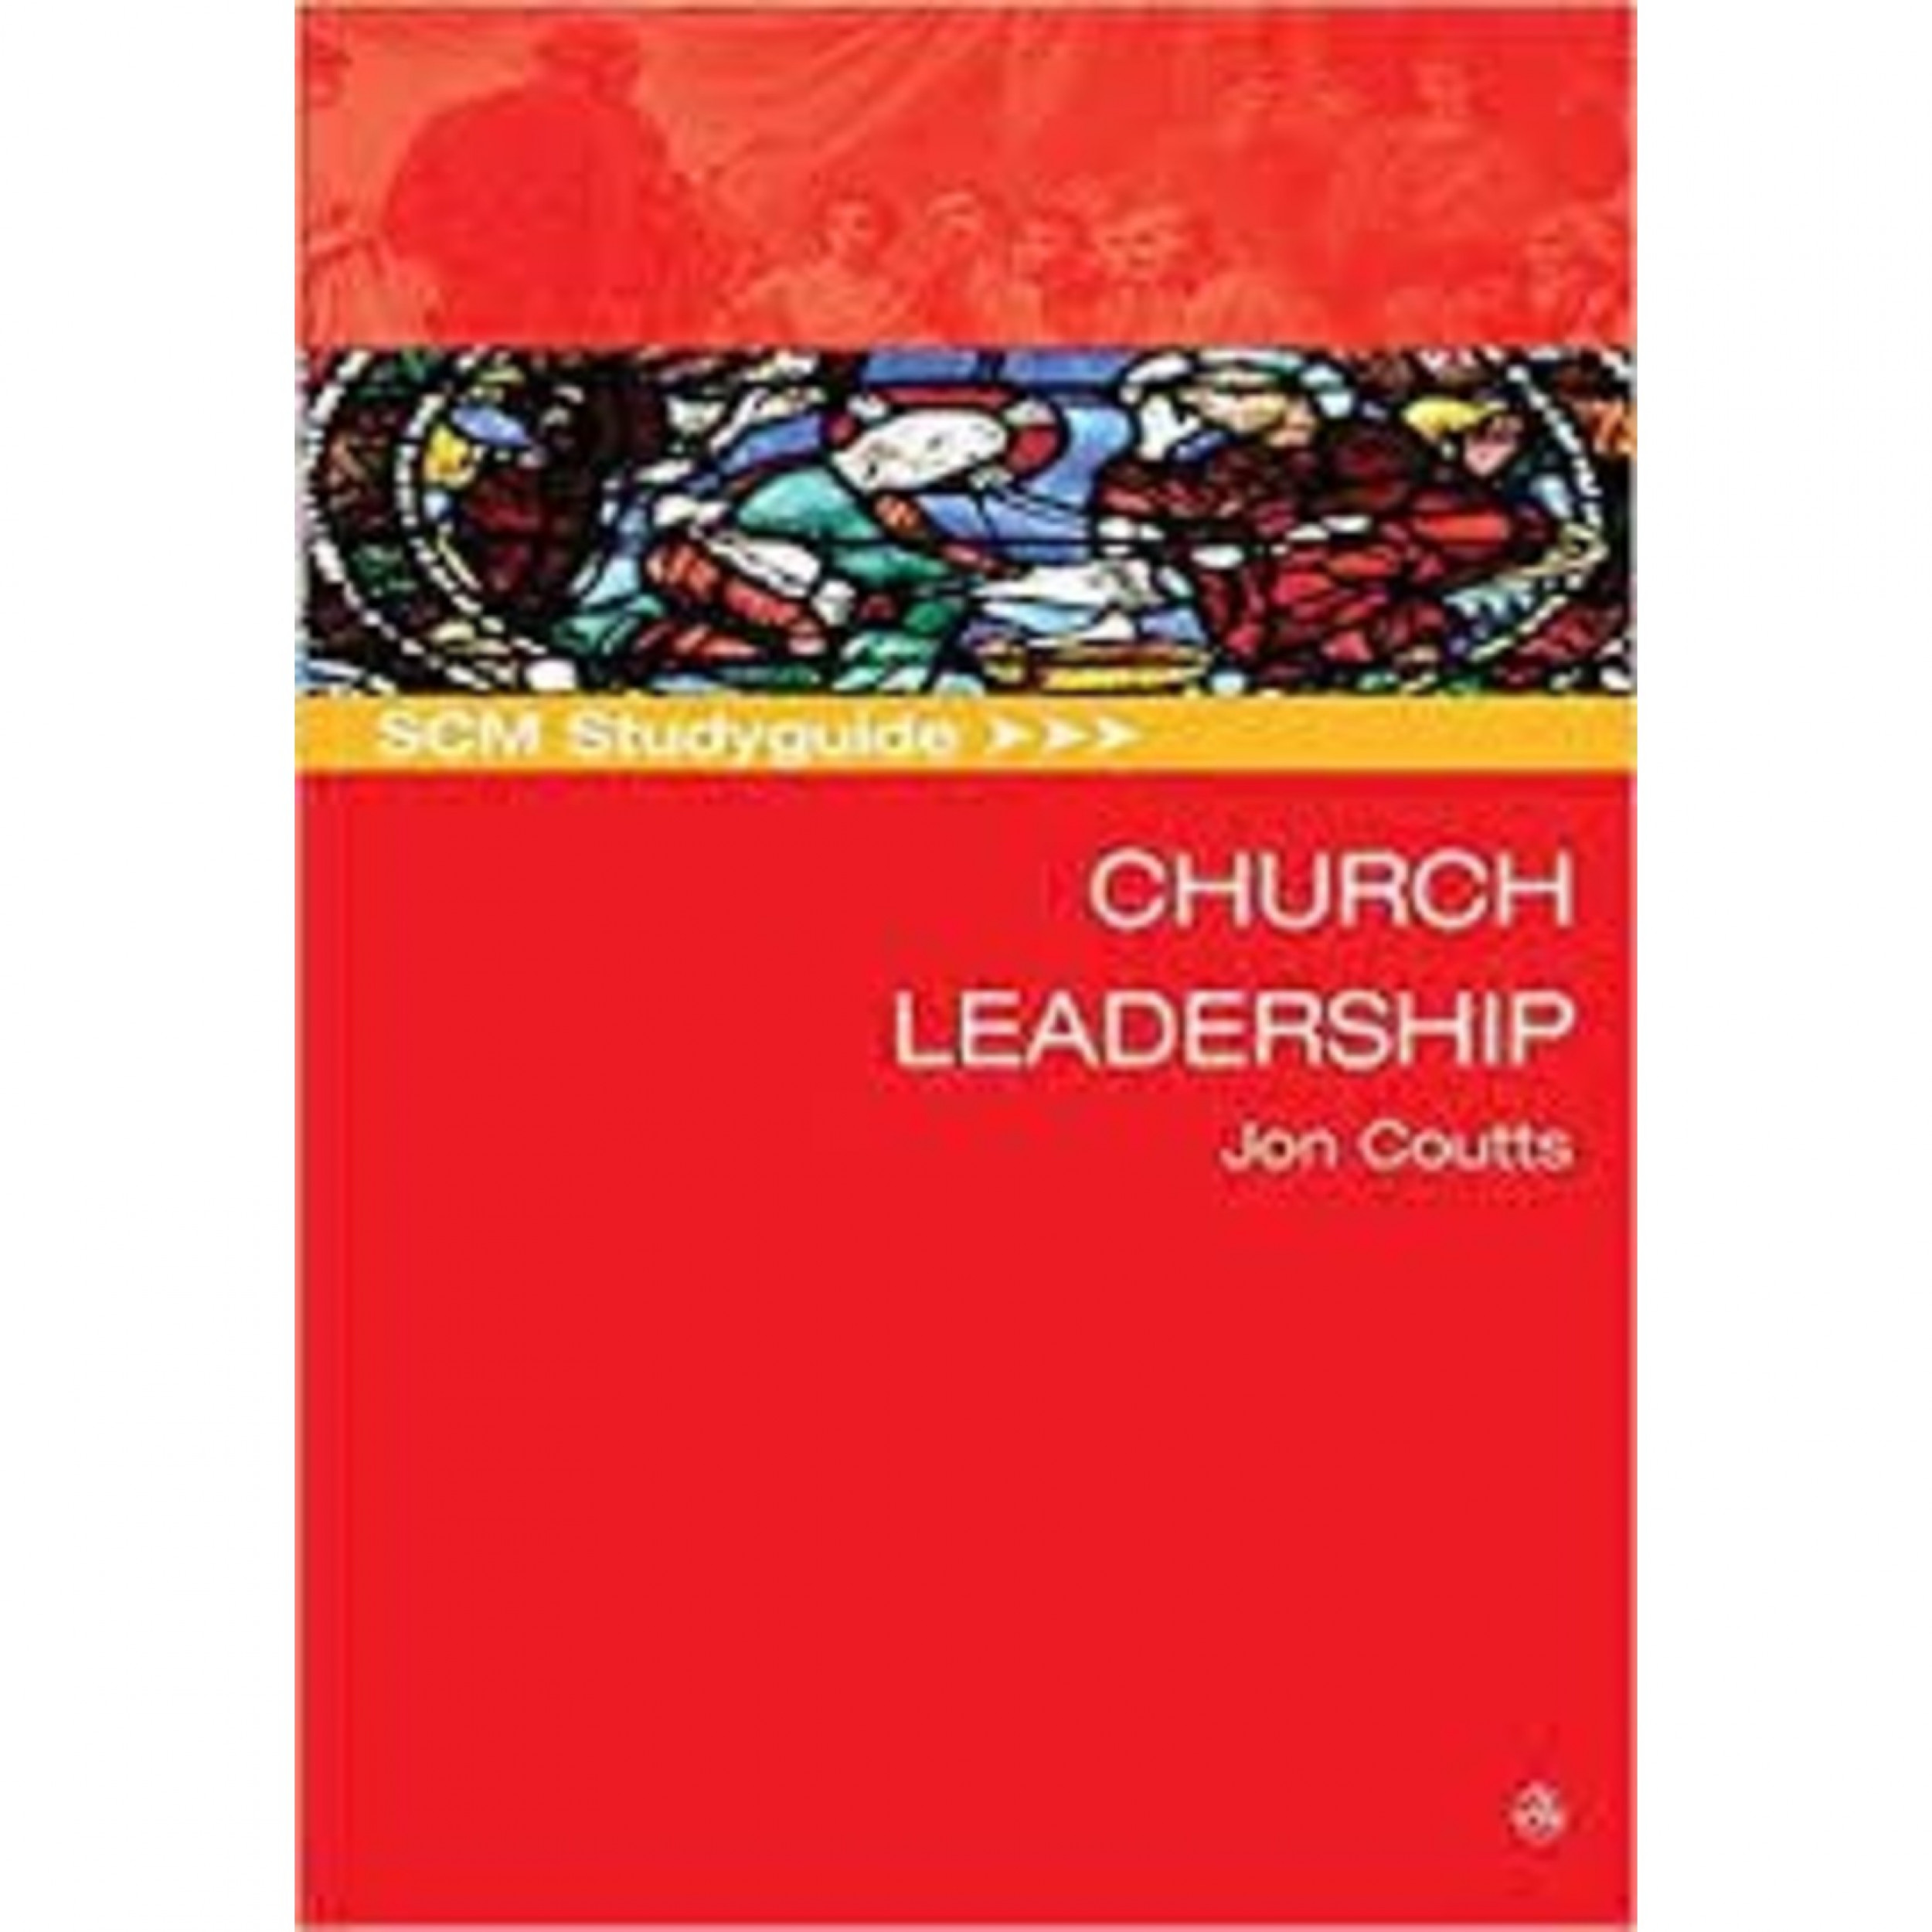 scm-studyguide-church-leadership-jon-coutts.jpg